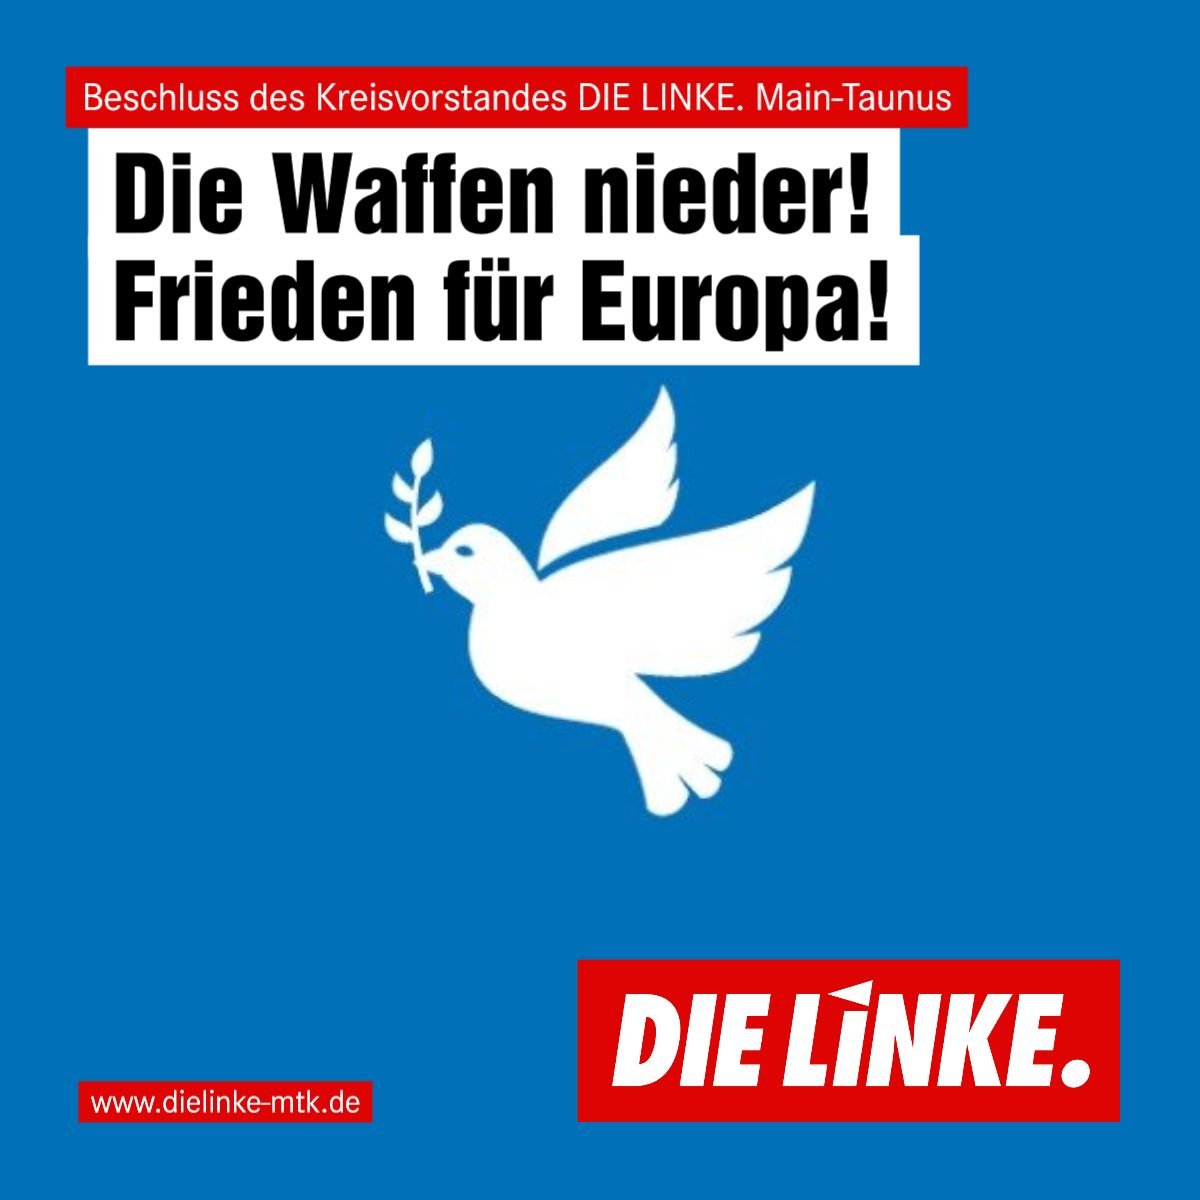 Das Bild zeigt eine Friedenstaube mit der Aufschrift: Die Waffen nieder! Frieden für Europa!